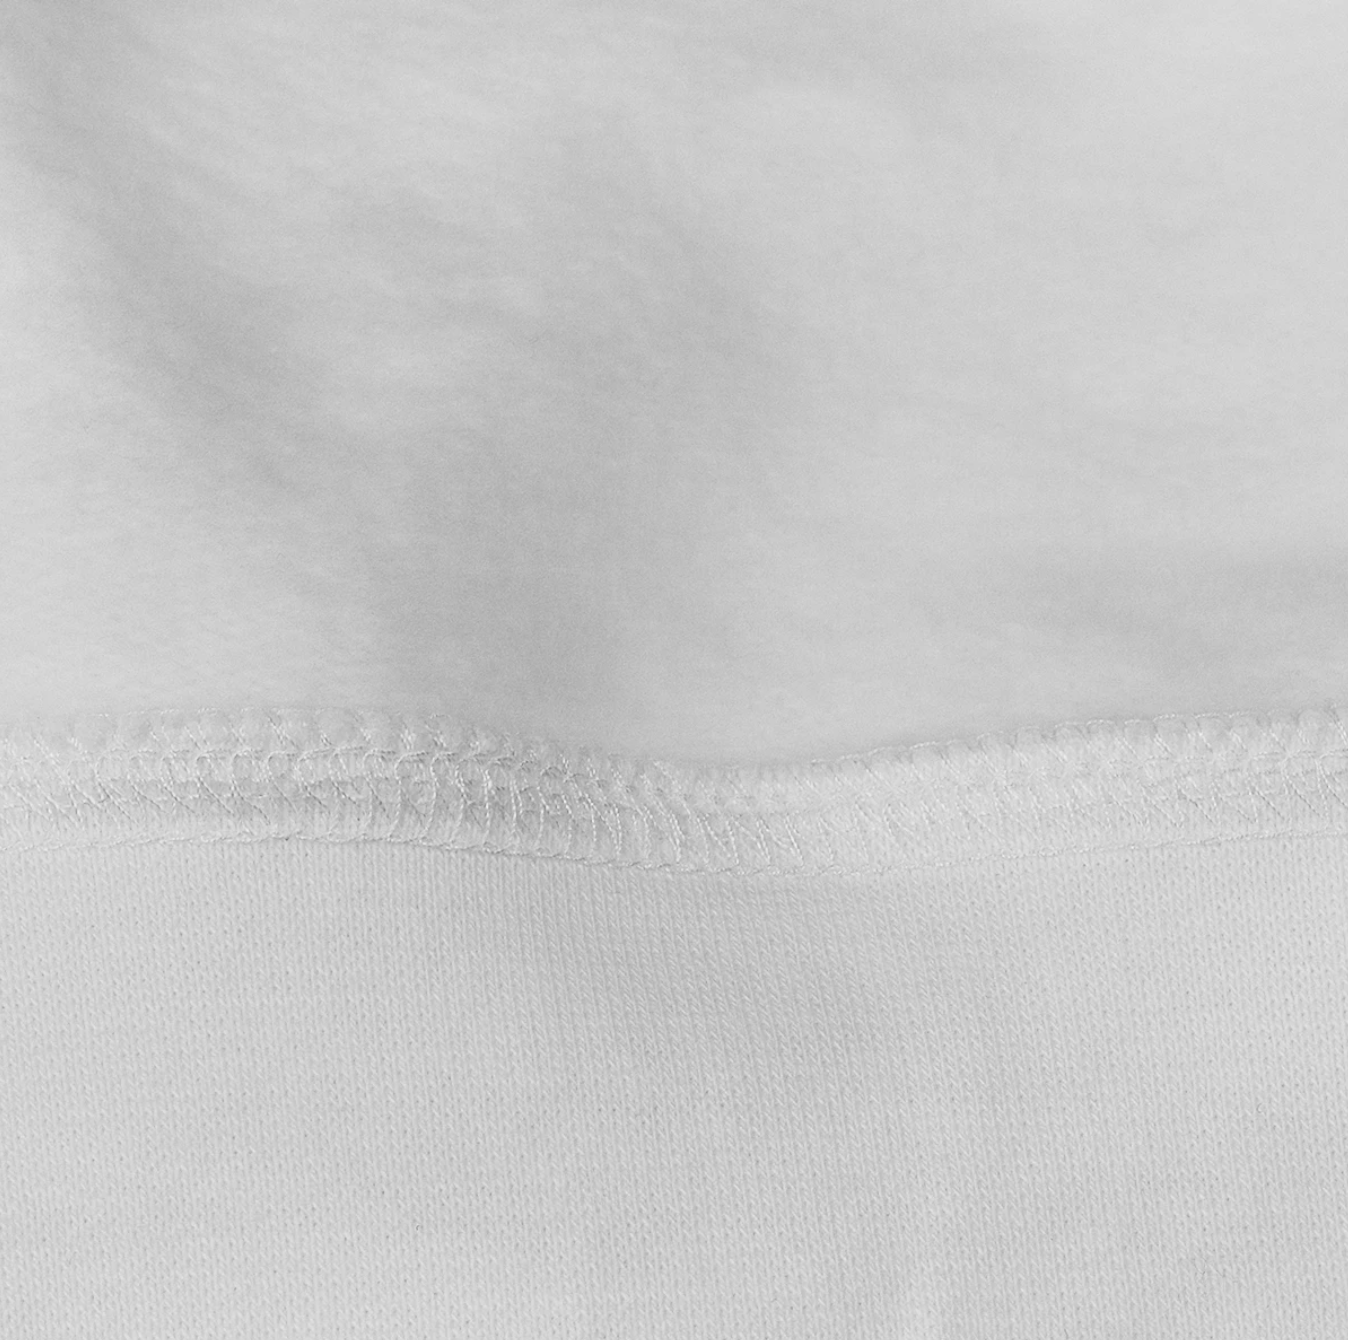 GREEN ALIEN - Unisex Fleece-lined Full-zip Hoodie